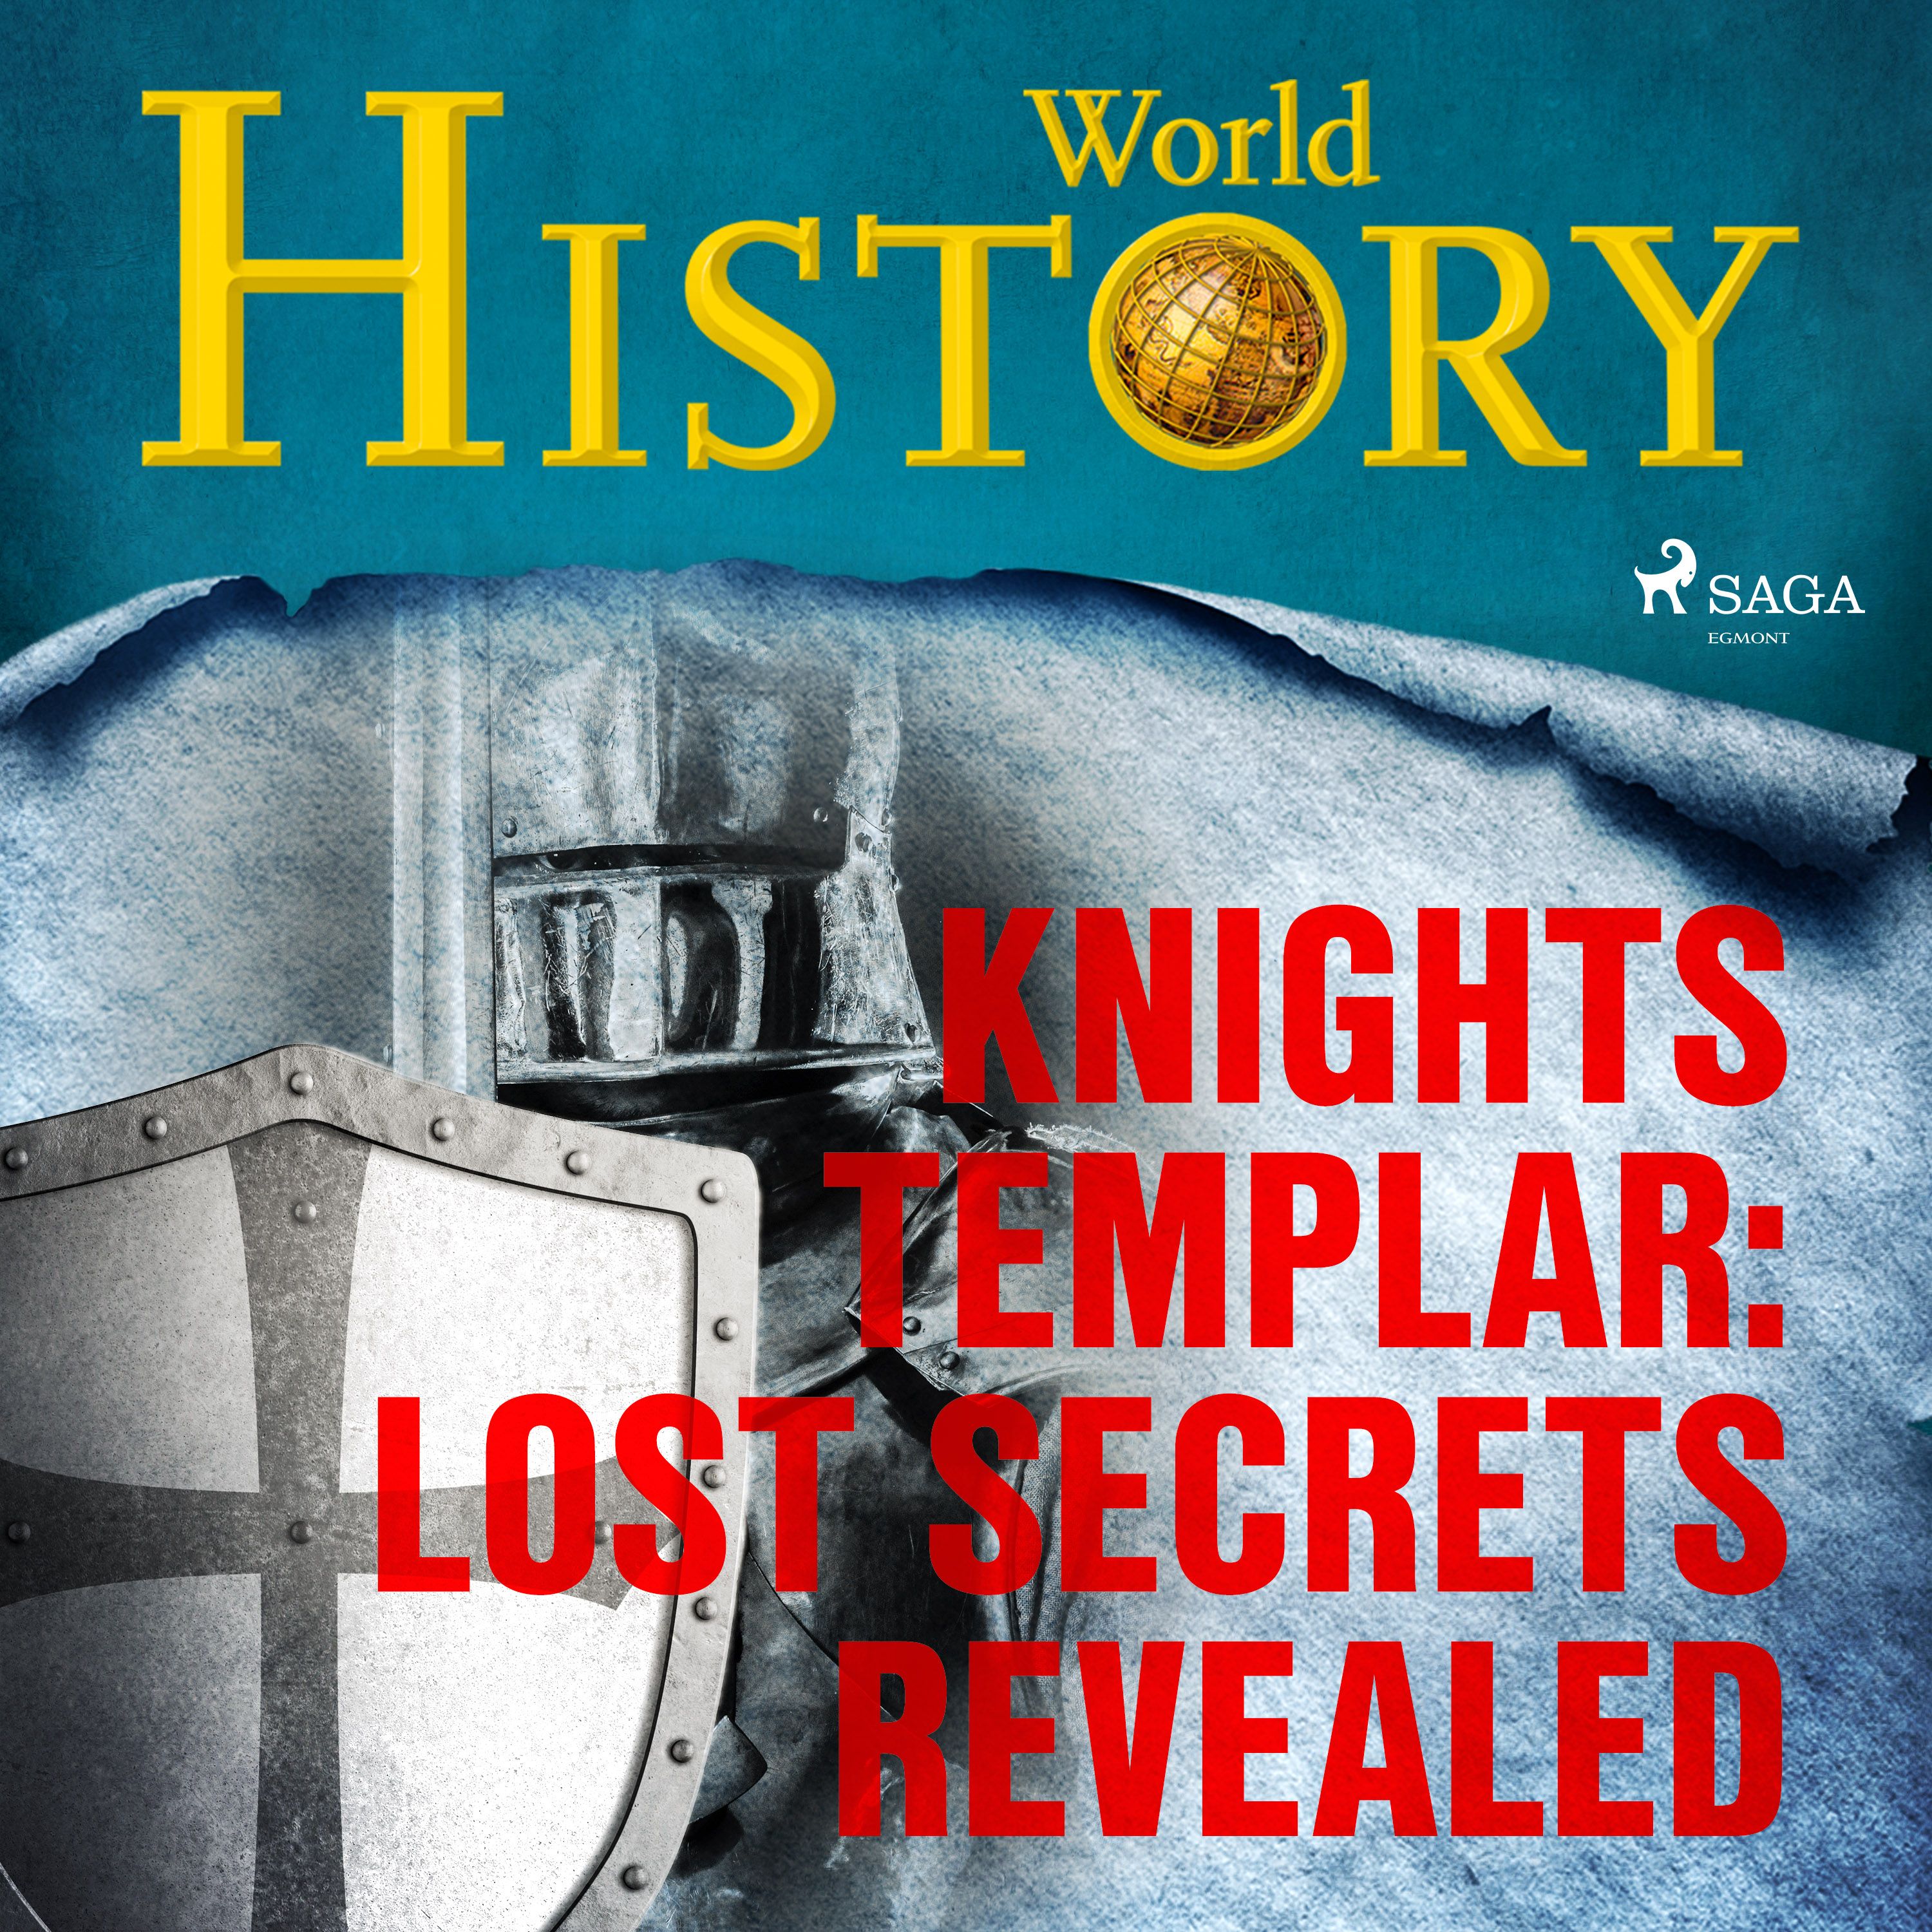 Knights Templar: Lost Secrets Revealed, ljudbok av World History